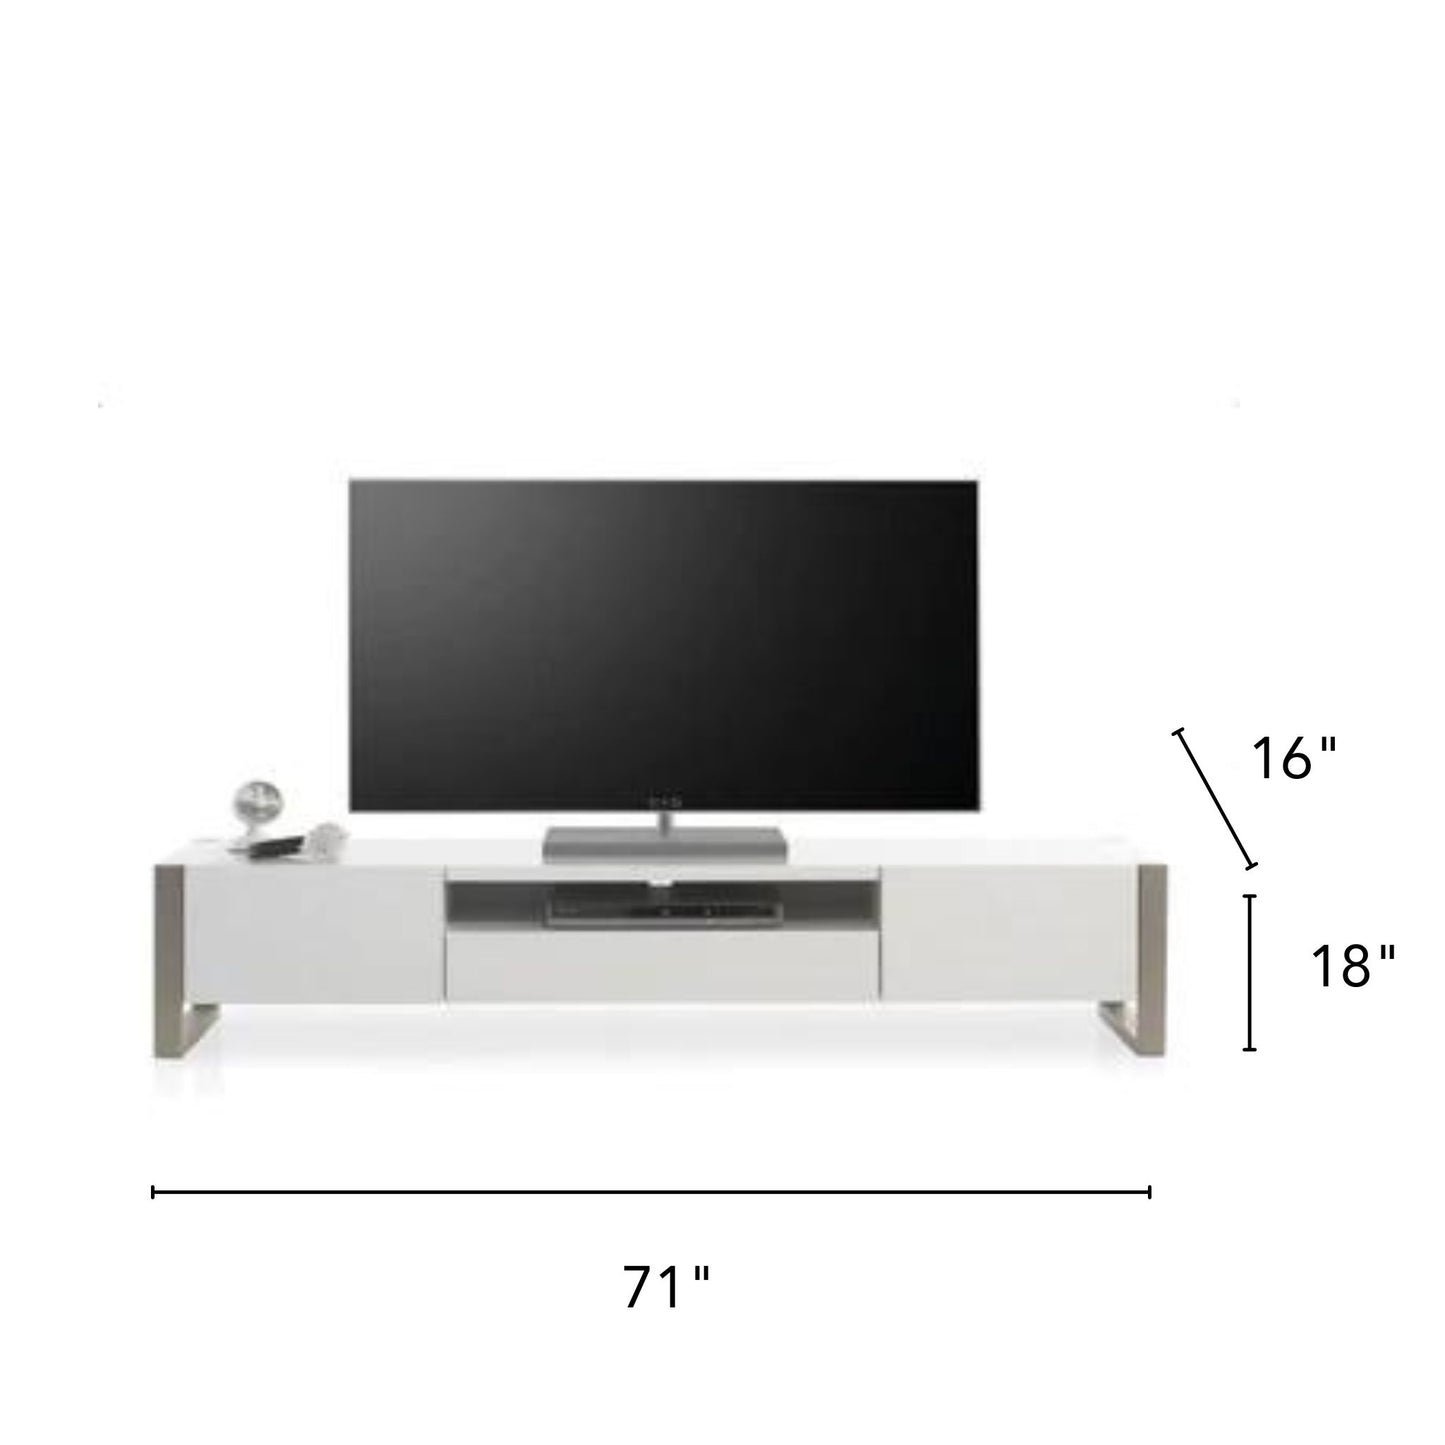 TV-KL01 PLATINUM Contemporary TV Stand